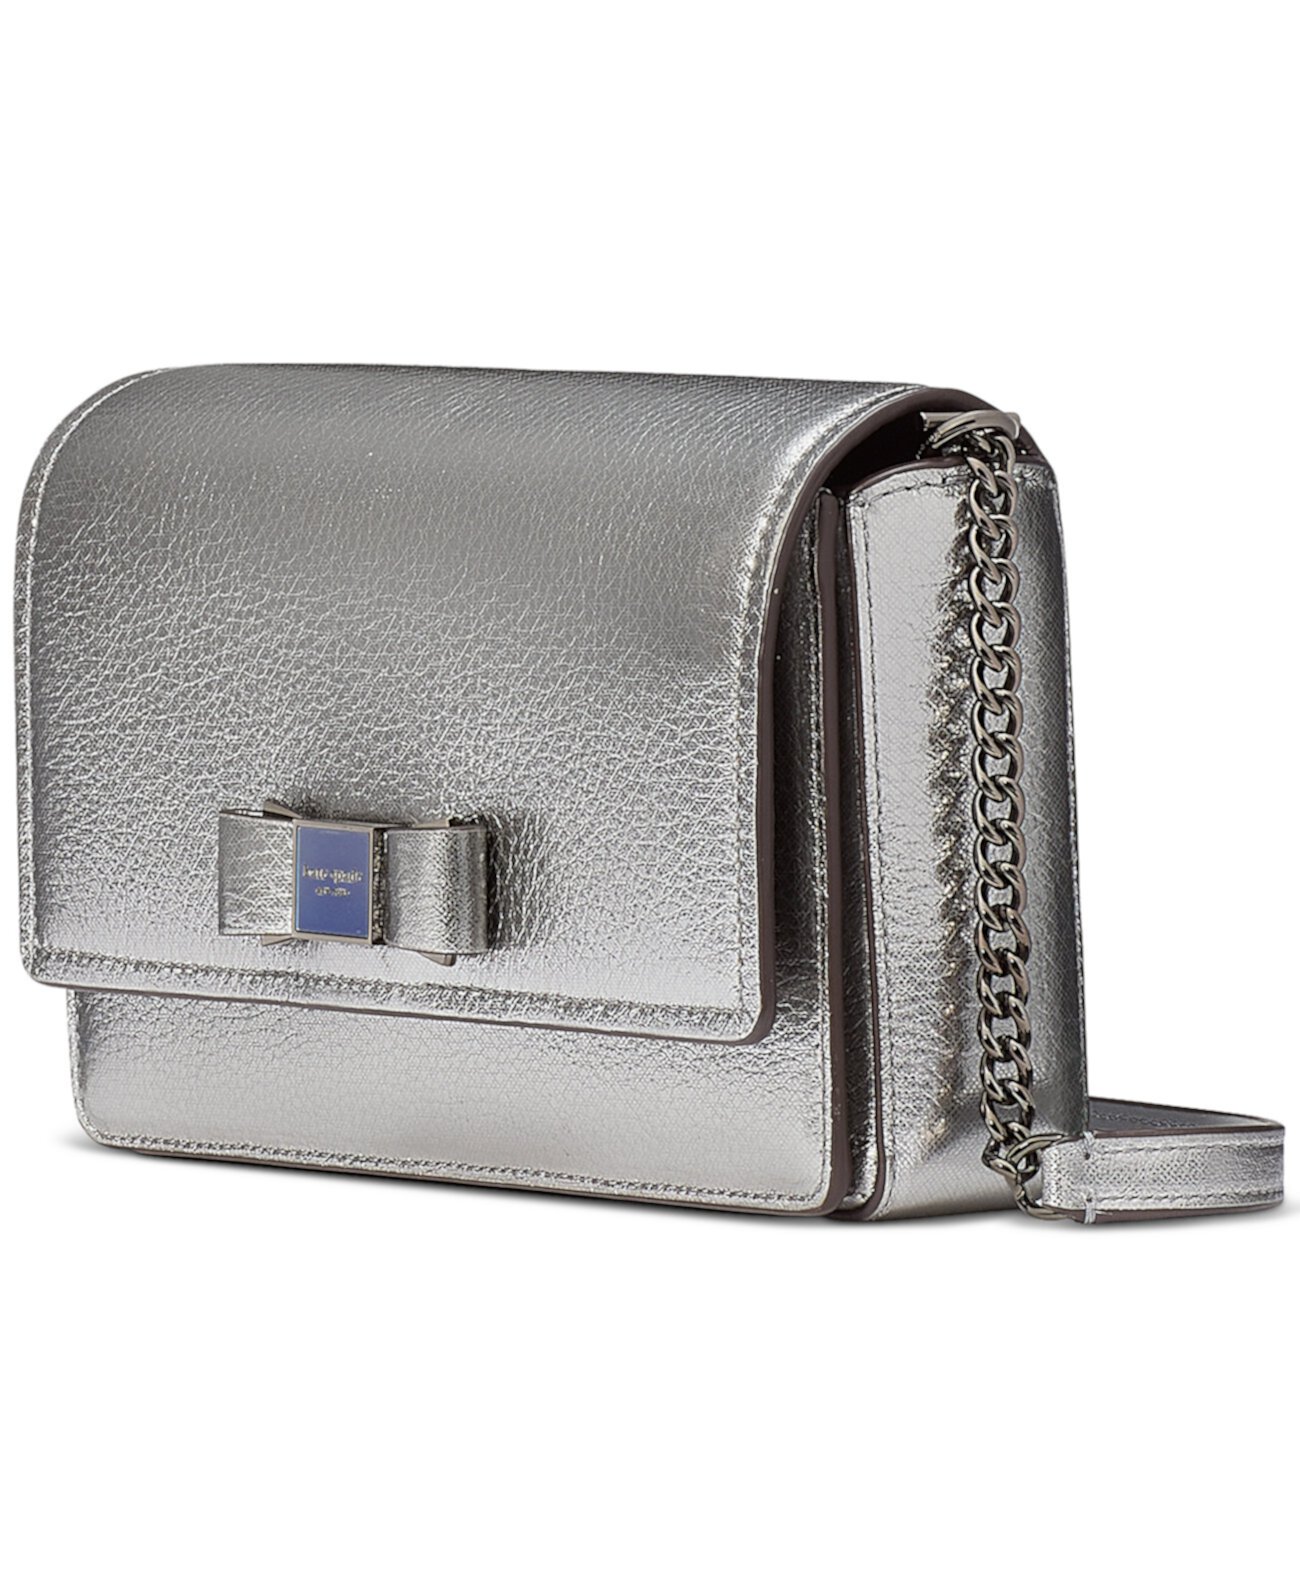 Кожаный кошелек Morgan Bow с отделкой и цепочкой с клапаном цвета металлик Kate Spade New York